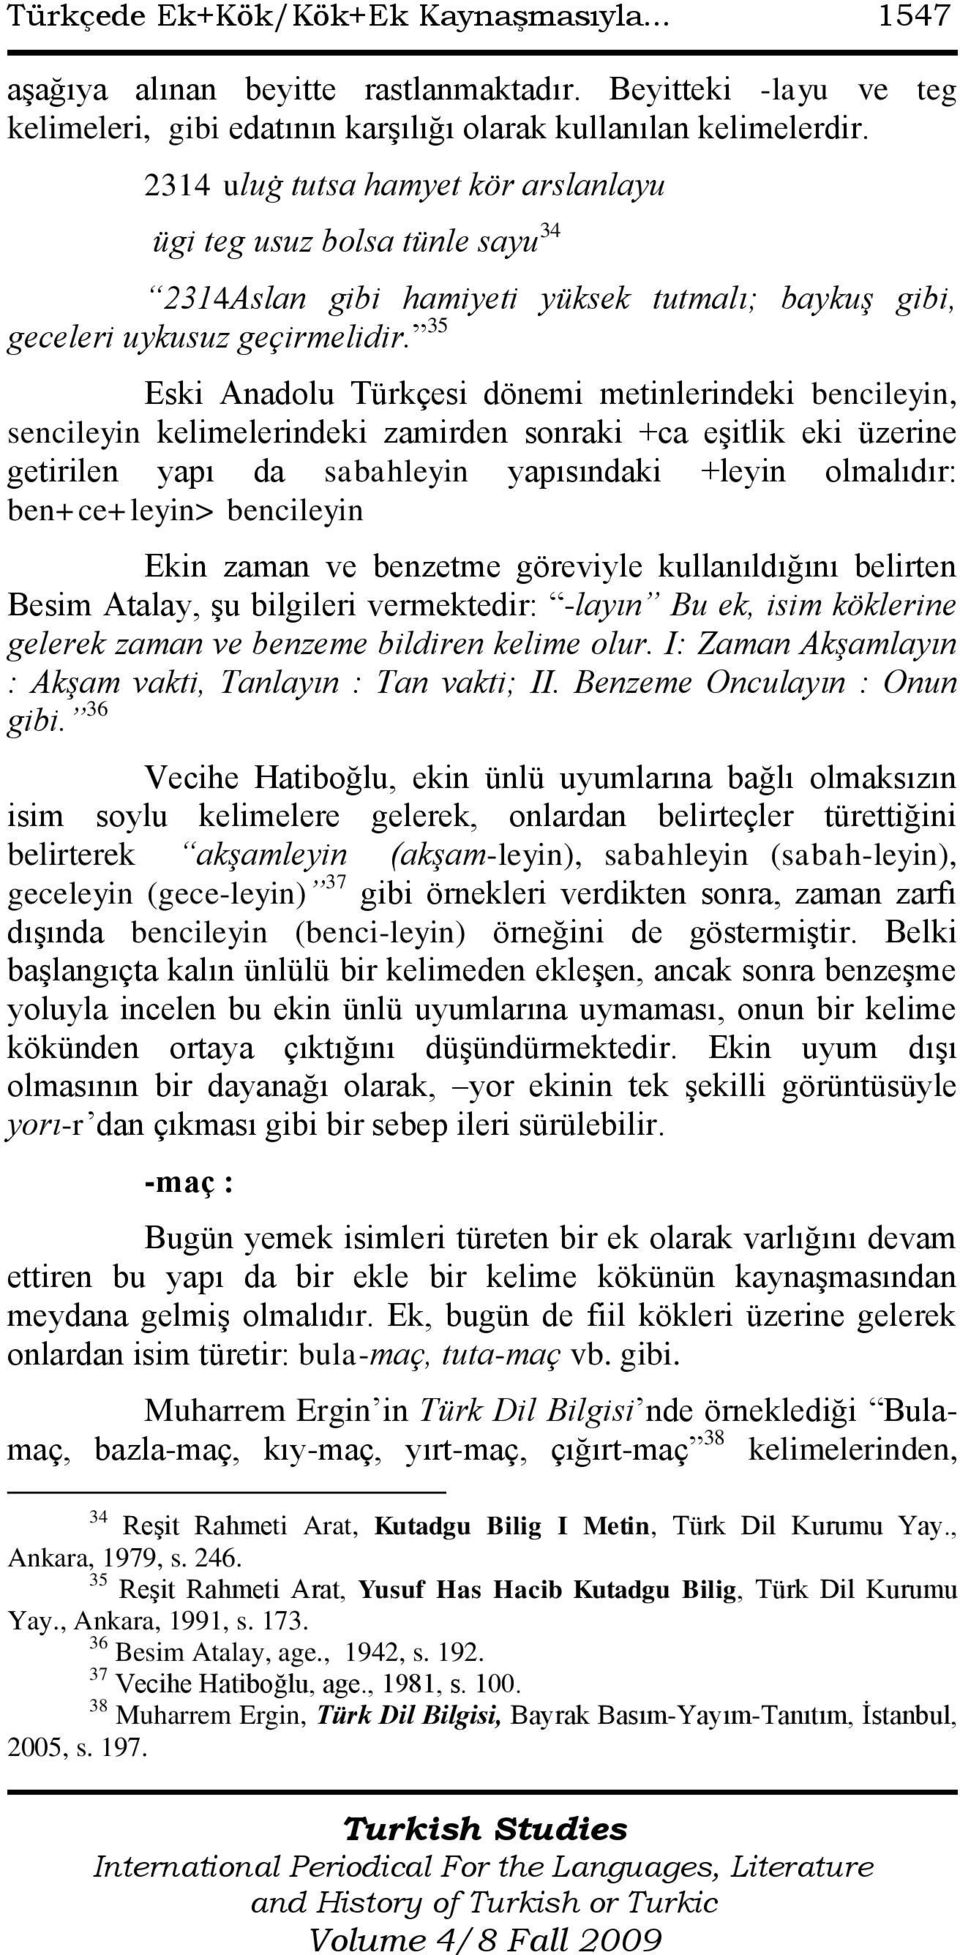 TÜRKÇEDE EK+KÖK / KÖK+EK KAYNAŞMASIYLA ORTAYA ÇIKAN EKLER - PDF ...